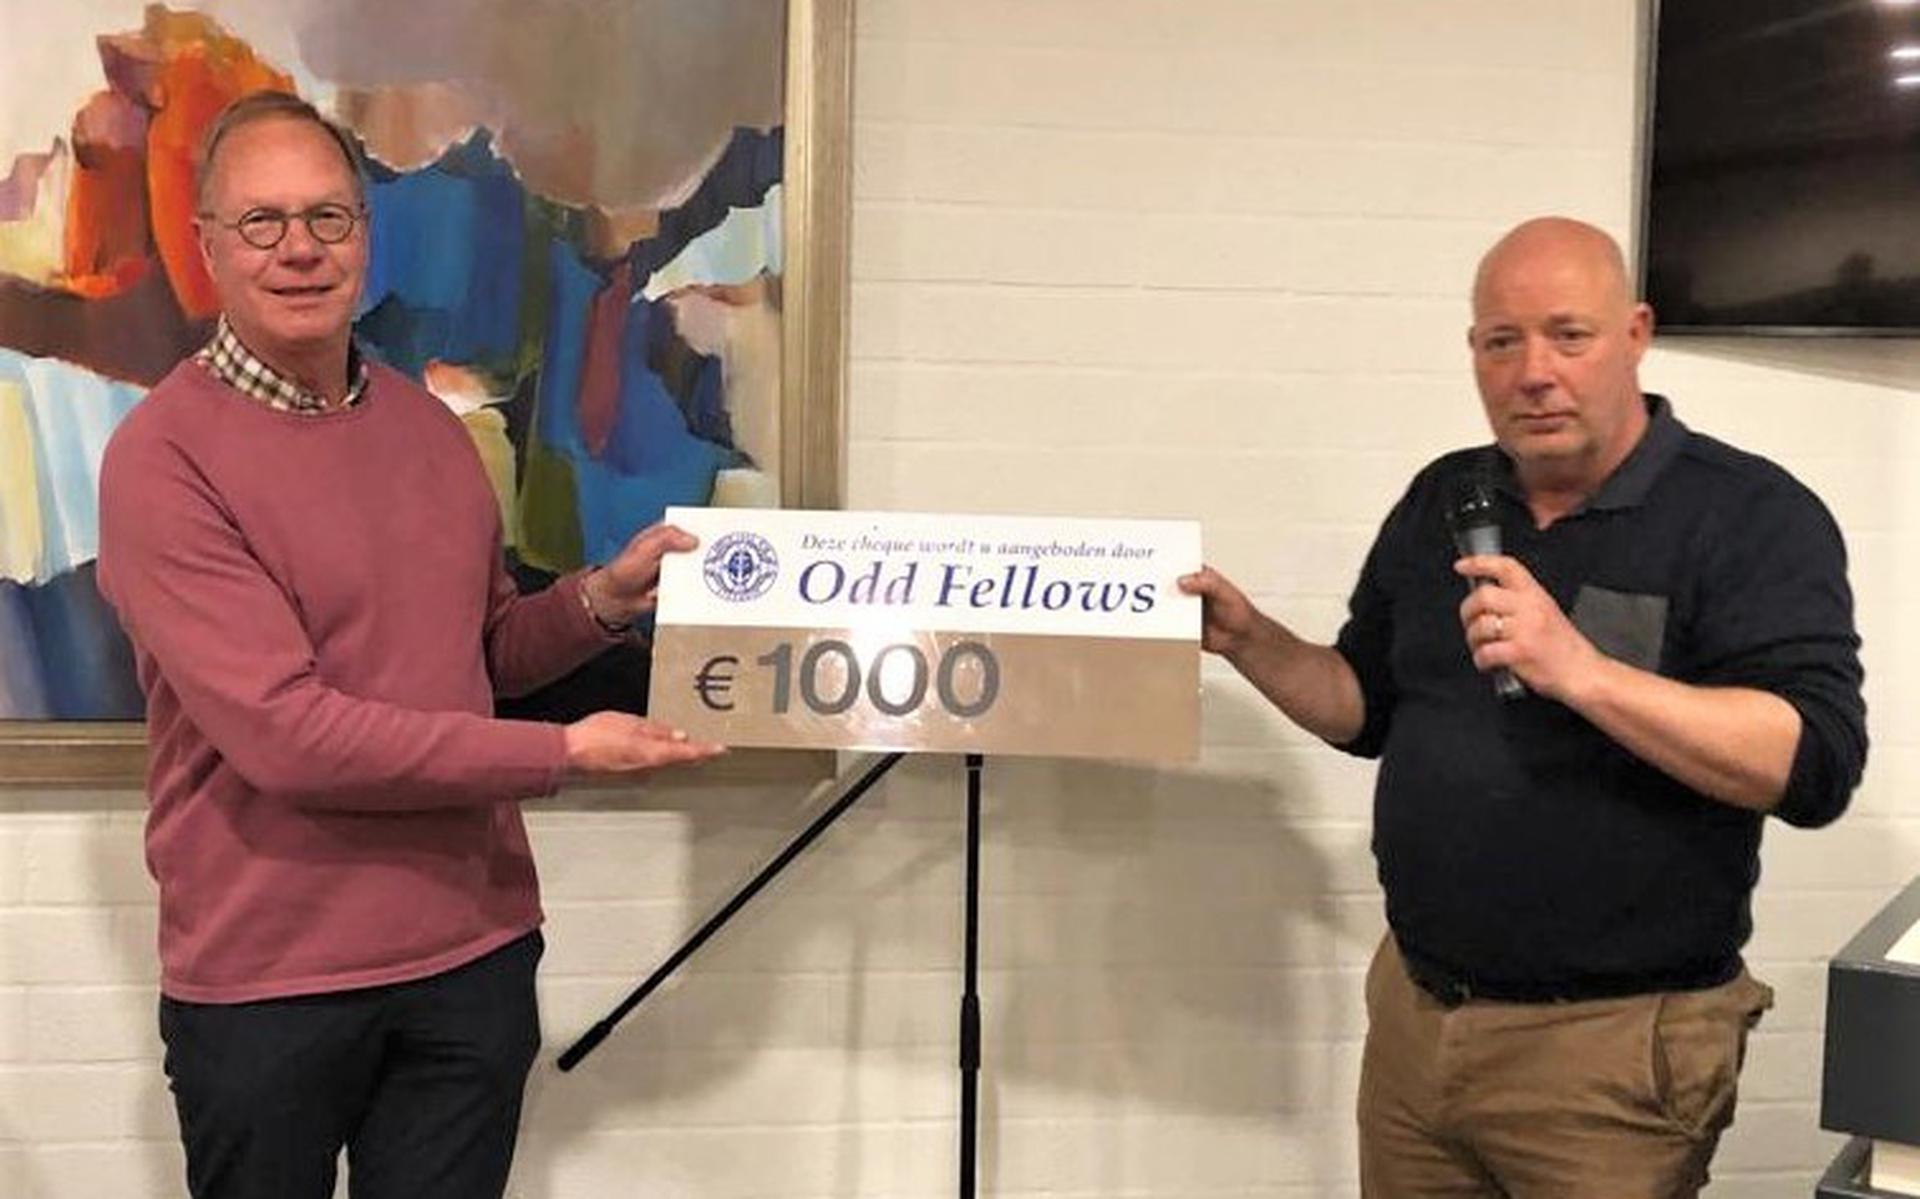 Wim Hultink (links) neemt namens Stichting Present de cheque in ontvangst die overhandigd wordt door Michiel Draaisma namens de Odd Fellows.